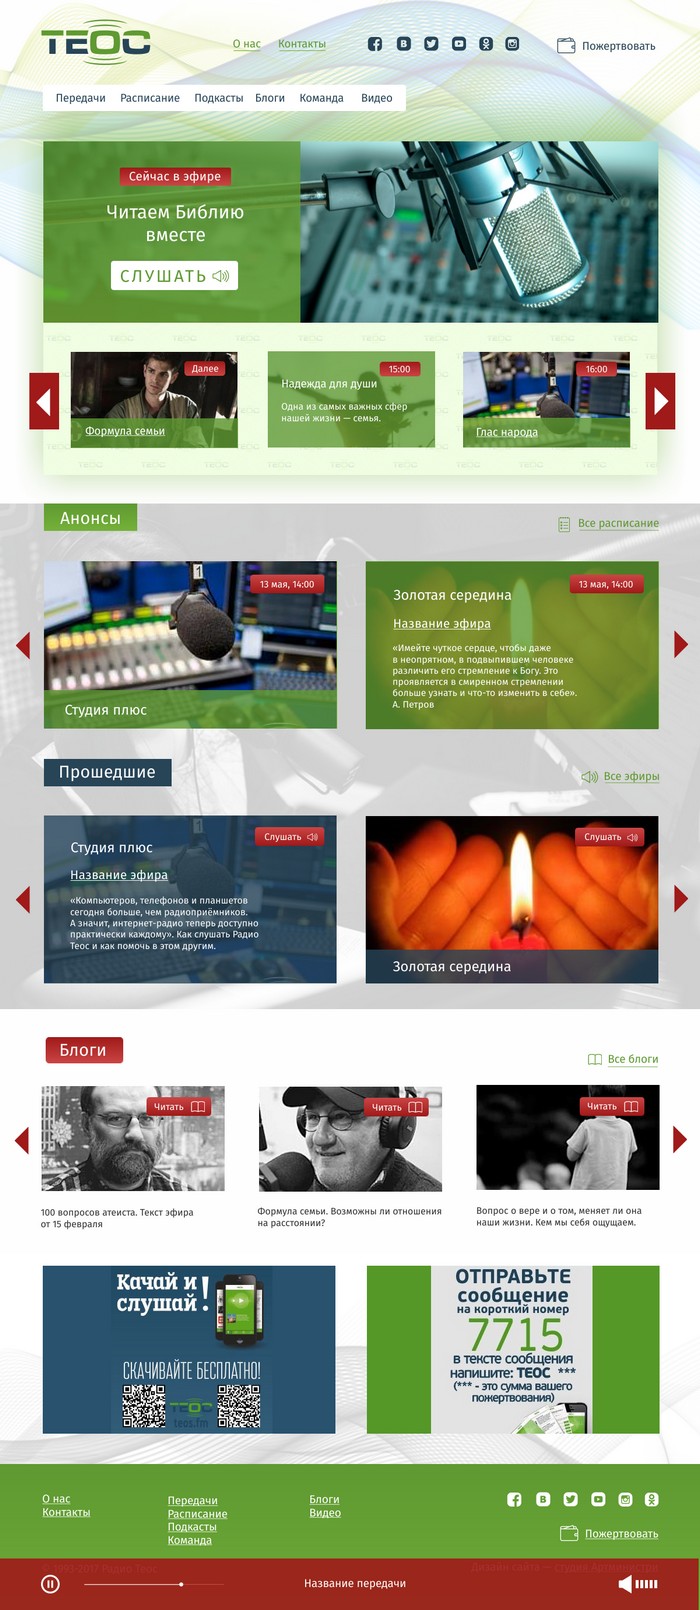 Радио Теос, дизайн главной страницы сайта